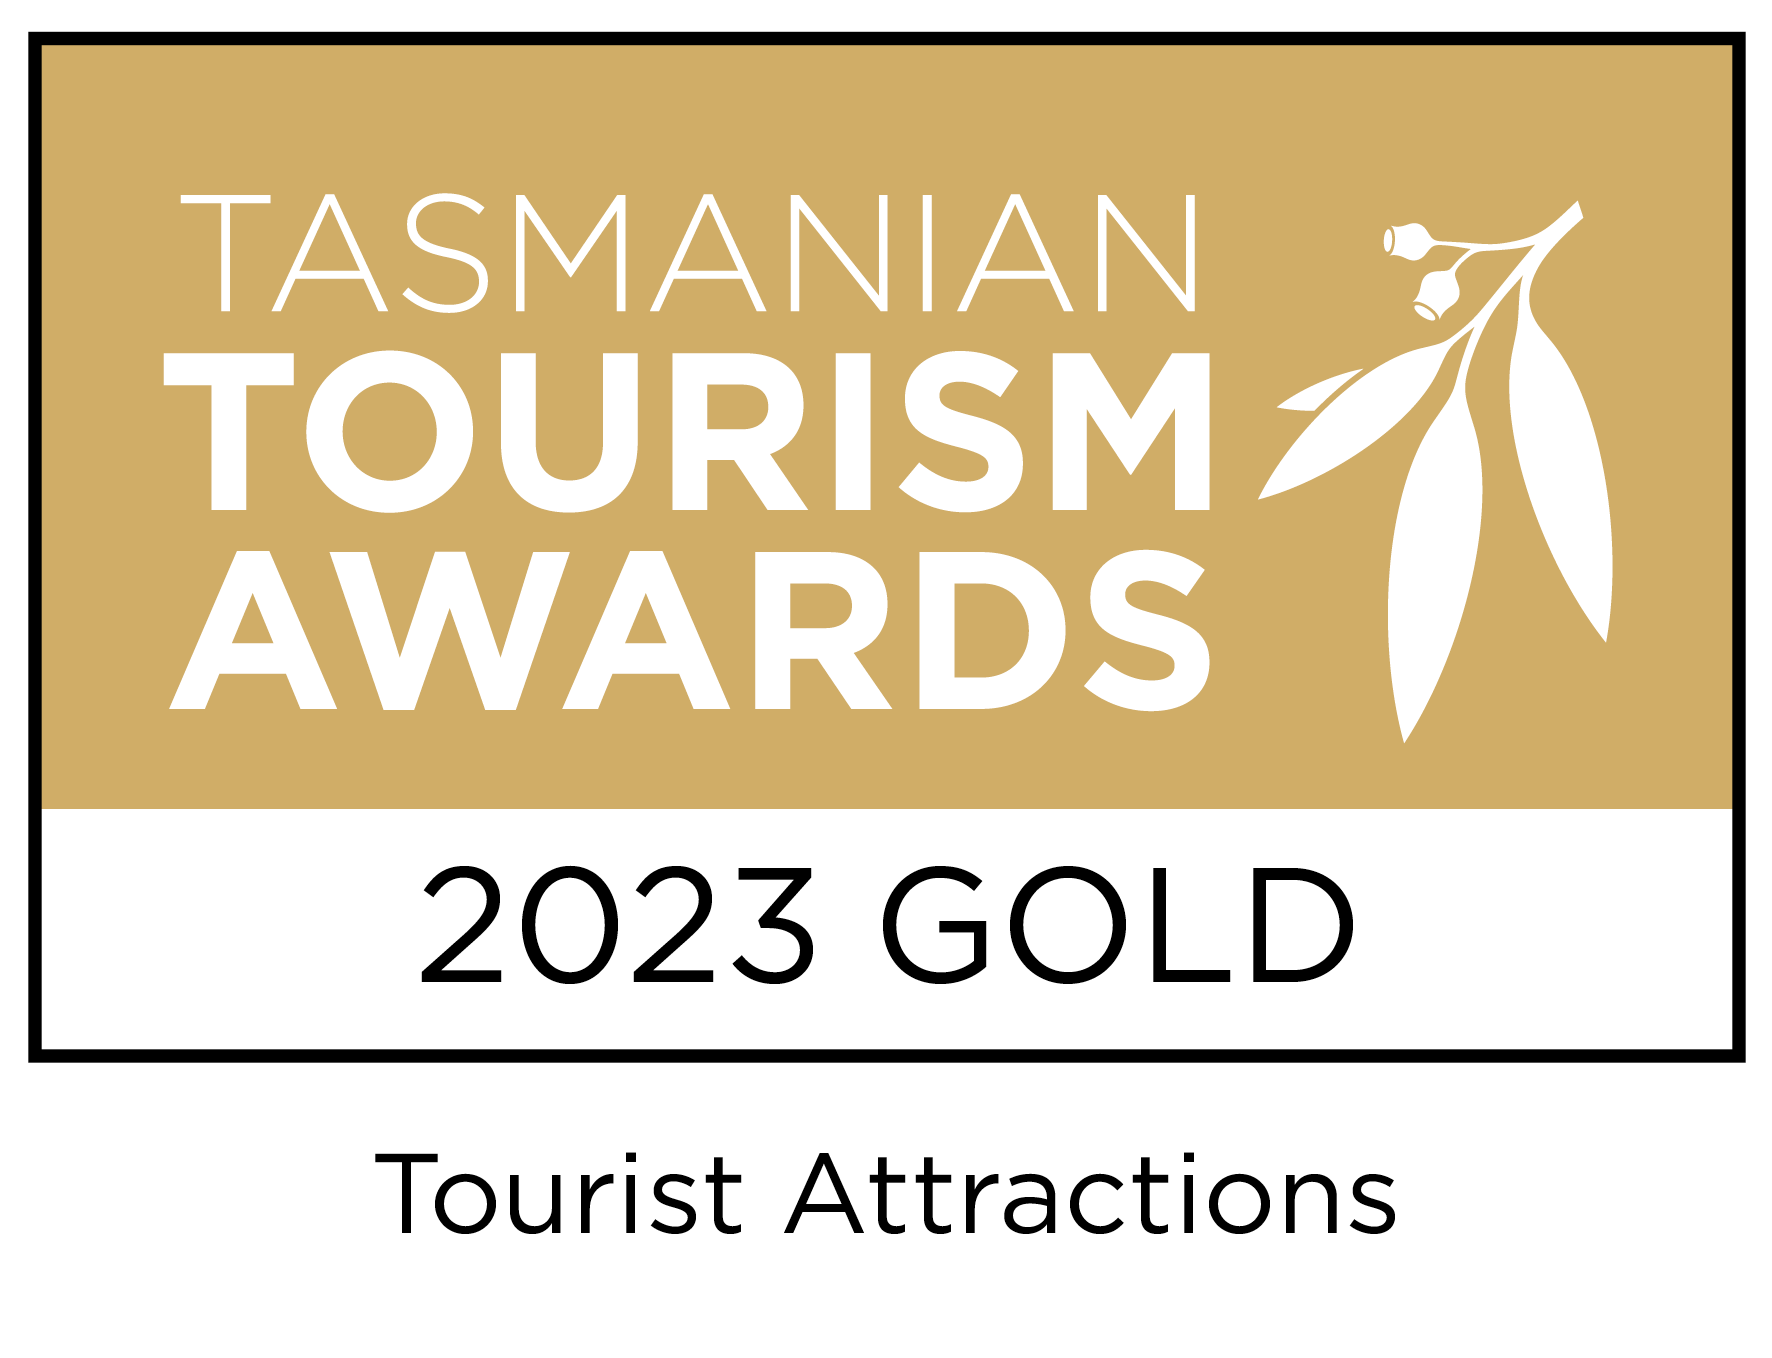 Tourism Tasmania Gold Award 2023